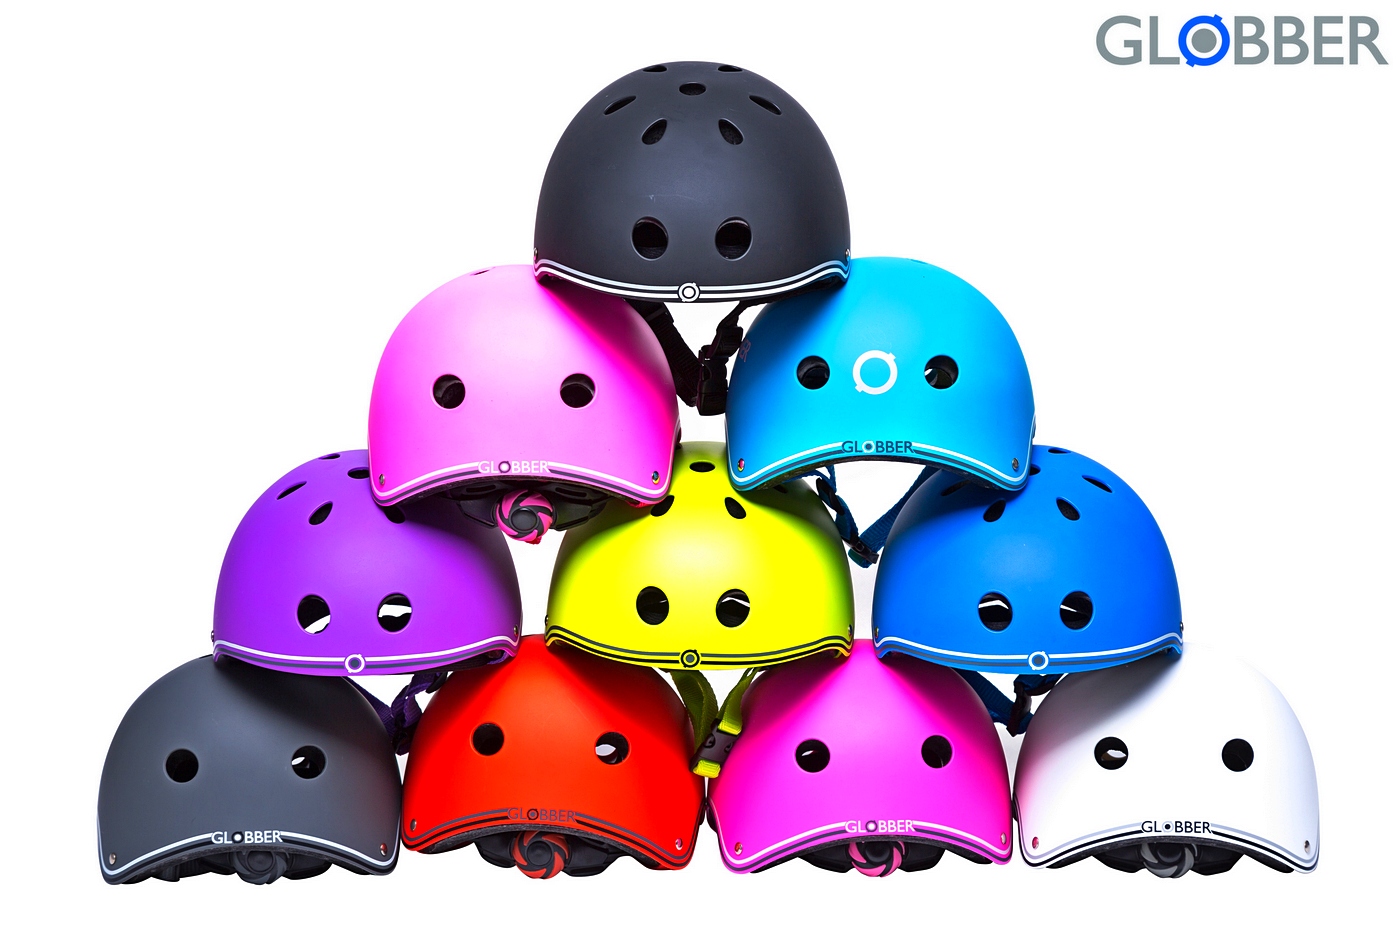 500-120 Шлем Globber Junior, black, XS-S 51-54 см  